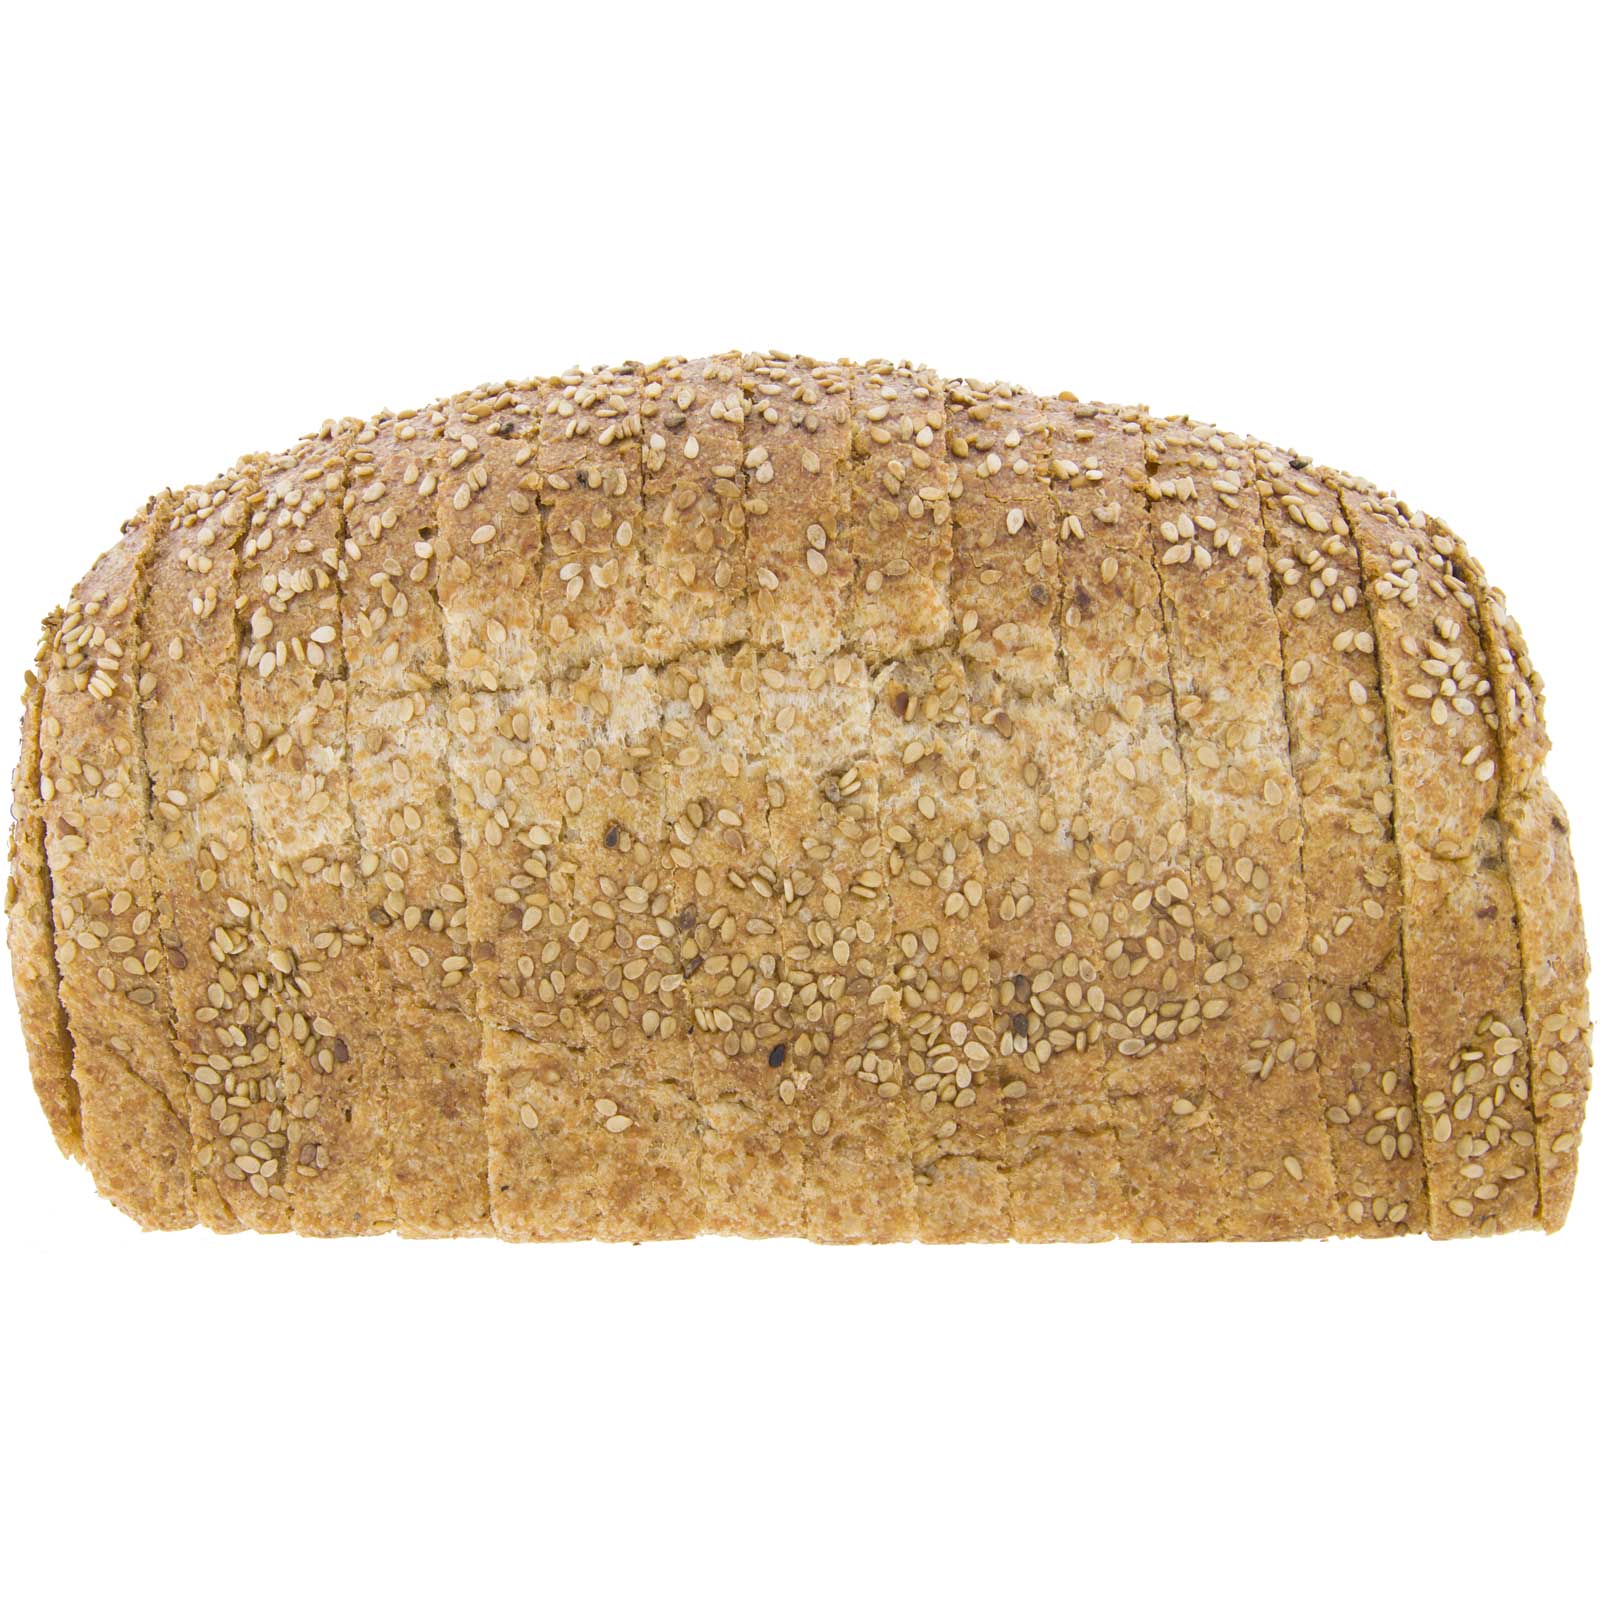 Pan de Molde de Espelta Integral con Sésamo 450g Ecológico